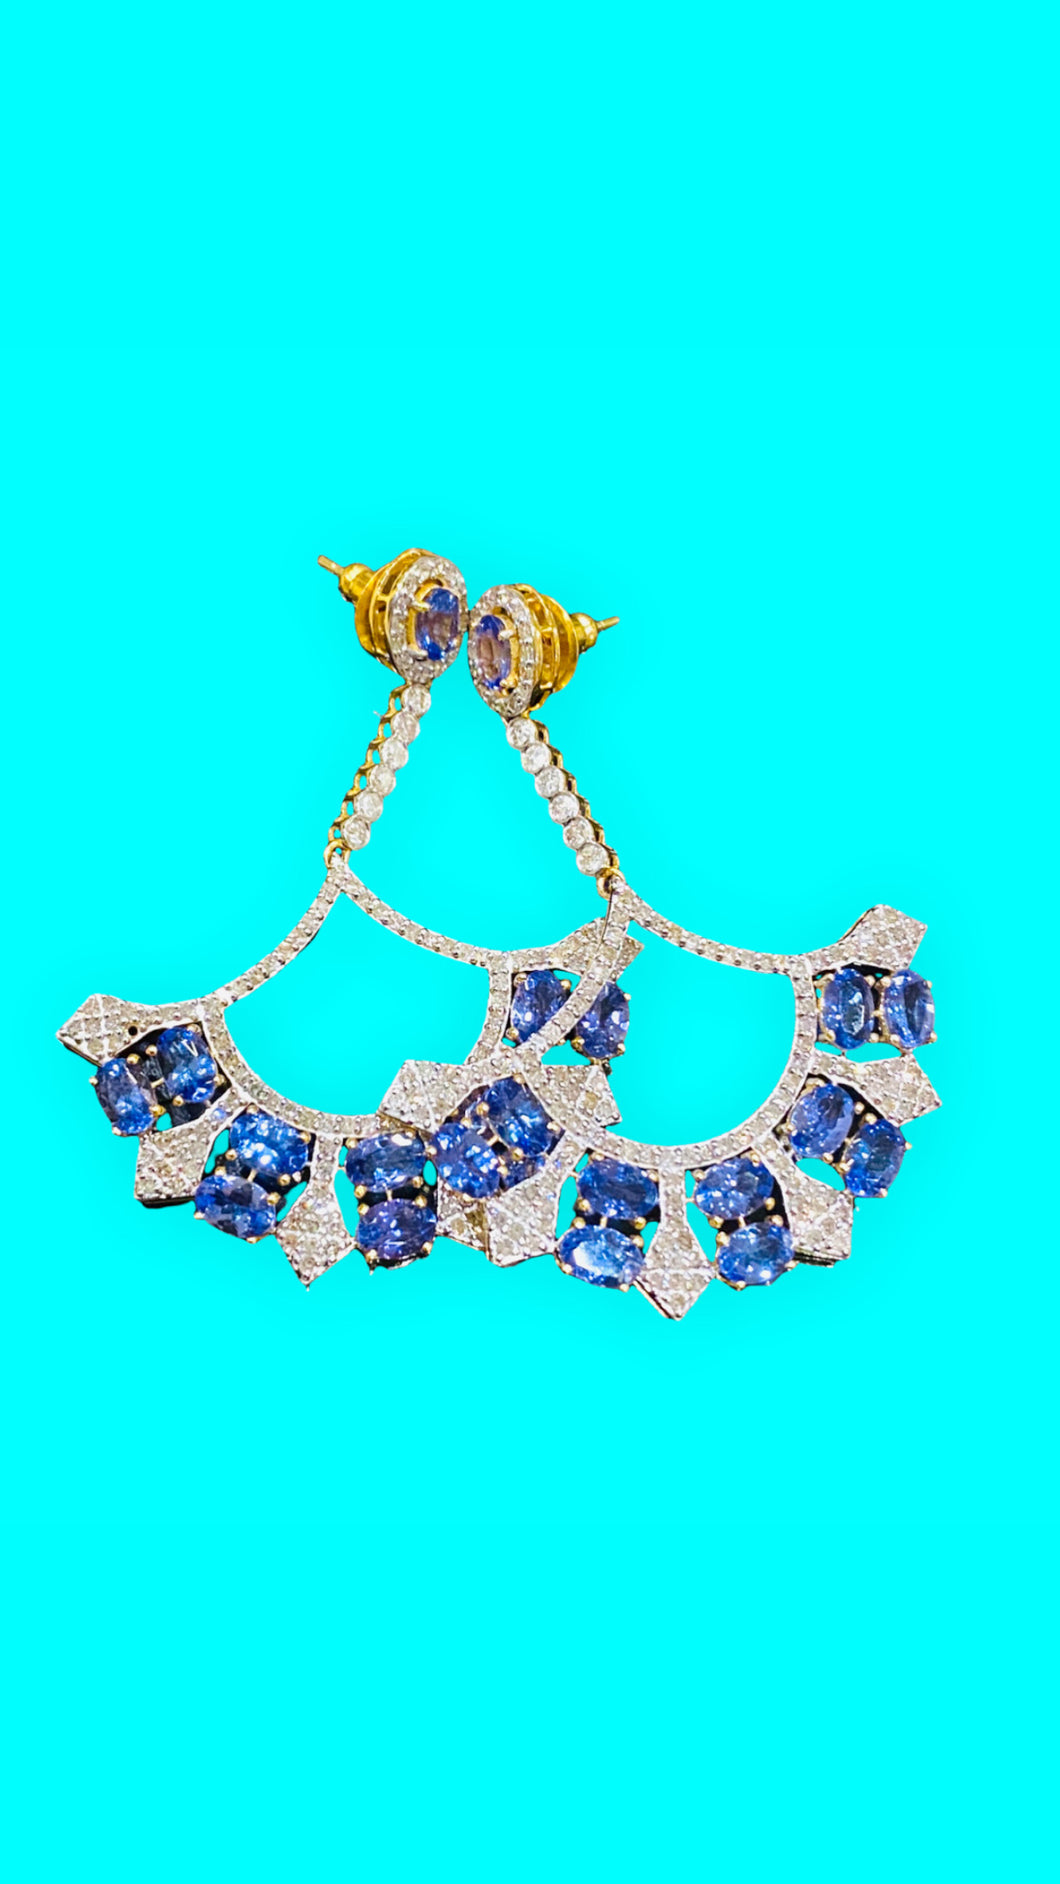 Tanzanite chandelier earrings